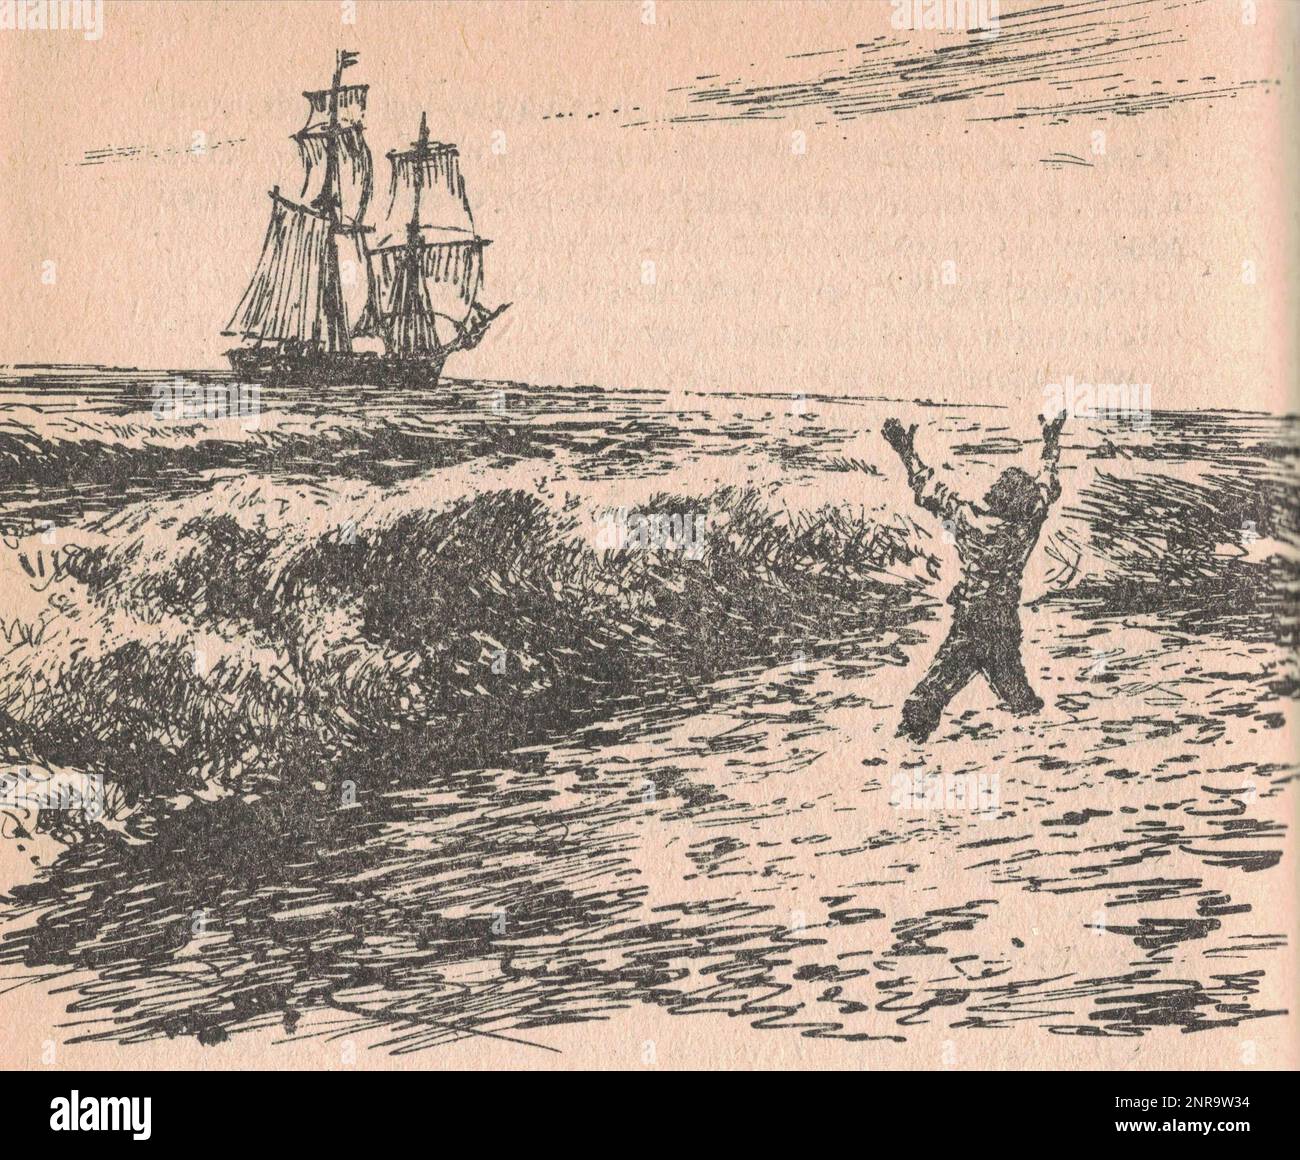 Die schwarz-weiße Abbildung zeigt, dass der Überlebende vom Schiff begrüßt wird. Die schwarz-weiße Abbildung zeigt, dass der Überlebende von einem Schiff begrüßt wird. Ein klassisches Schwarz-Weiß-Bild zeigt das Leben im Wilden Westen. Stockfoto